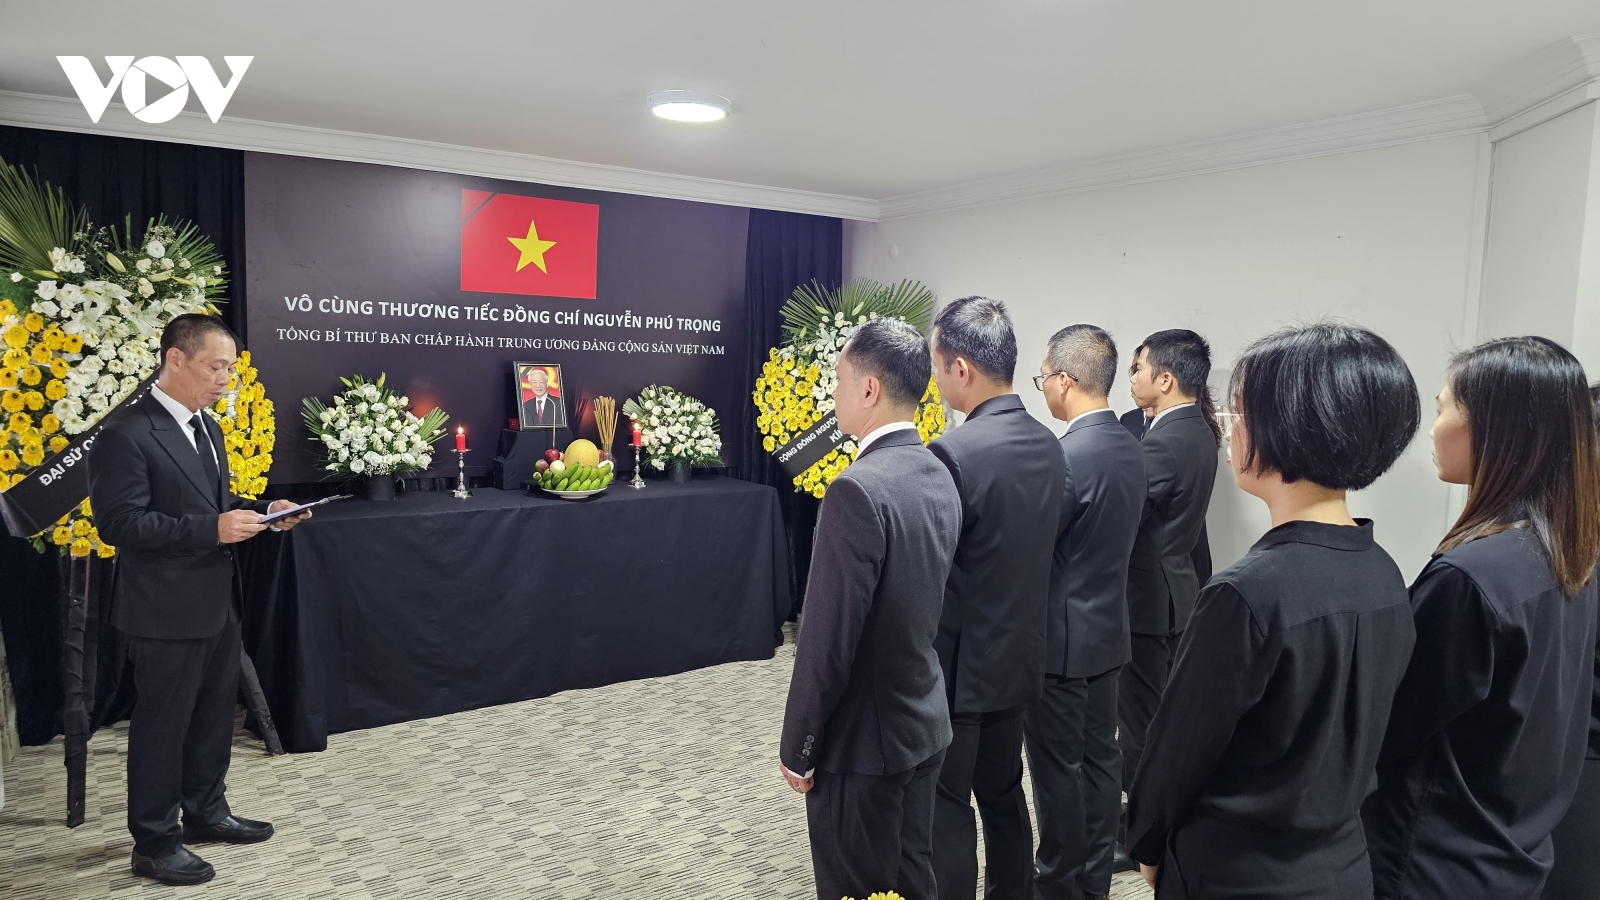 ĐSQ Việt Nam tại Thổ Nhĩ Kỳ mở sổ tang và tổ chức lễ viếng Tổng Bí thư Nguyễn Phú Trọng